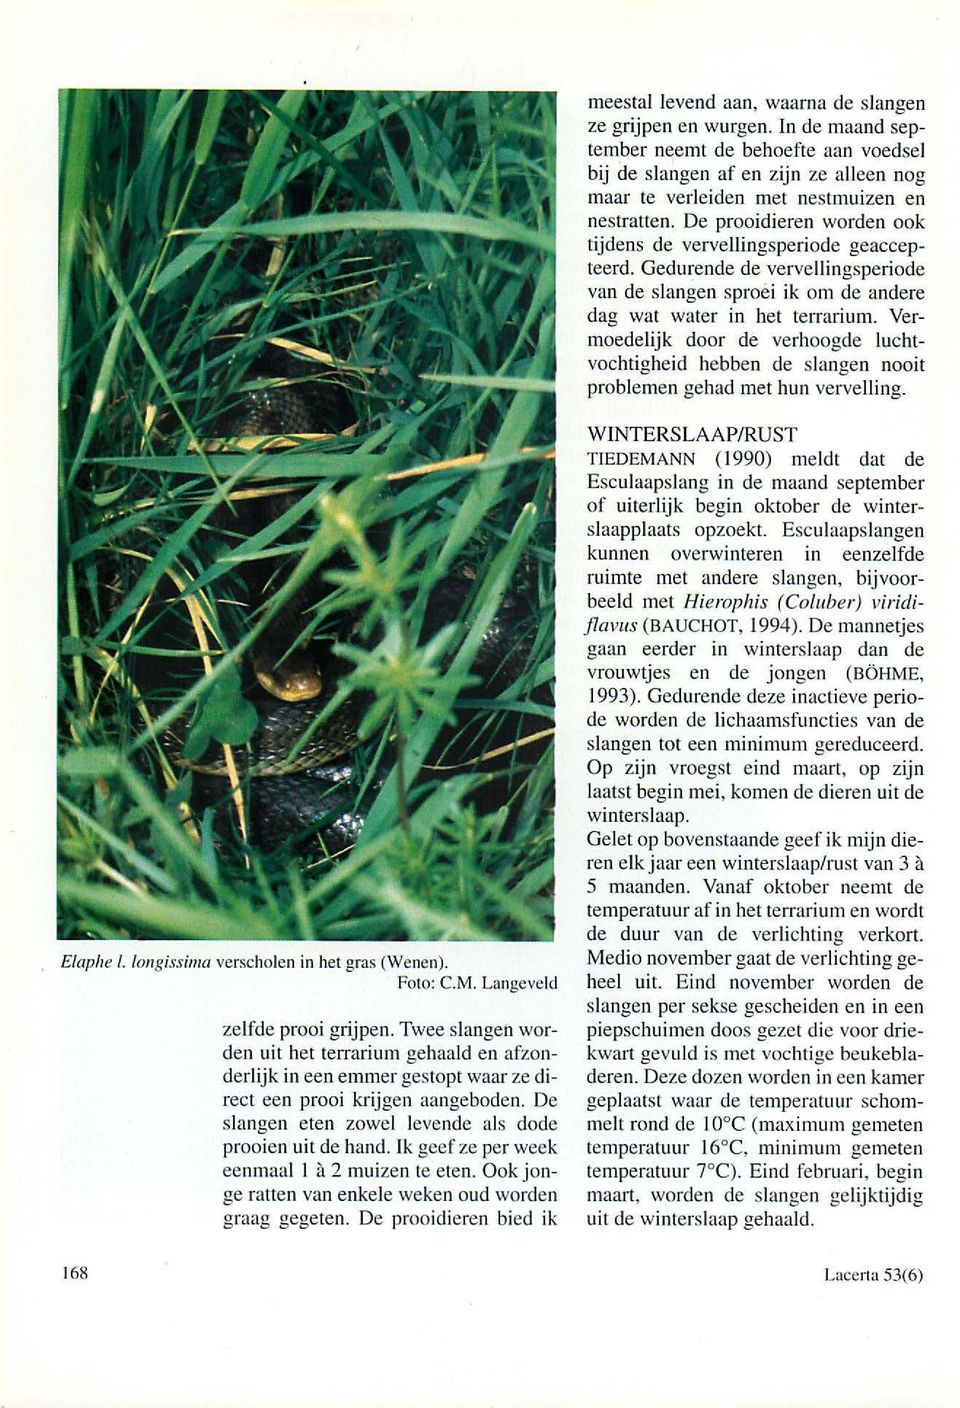 Yermoedelijk door de verhoogde luchtvochtigheid hebben de slangen nooit problemen gehad met hun vervelling. Elaphe I. /ongissima verscholen in het gras (Wenen). Foto: C.M.